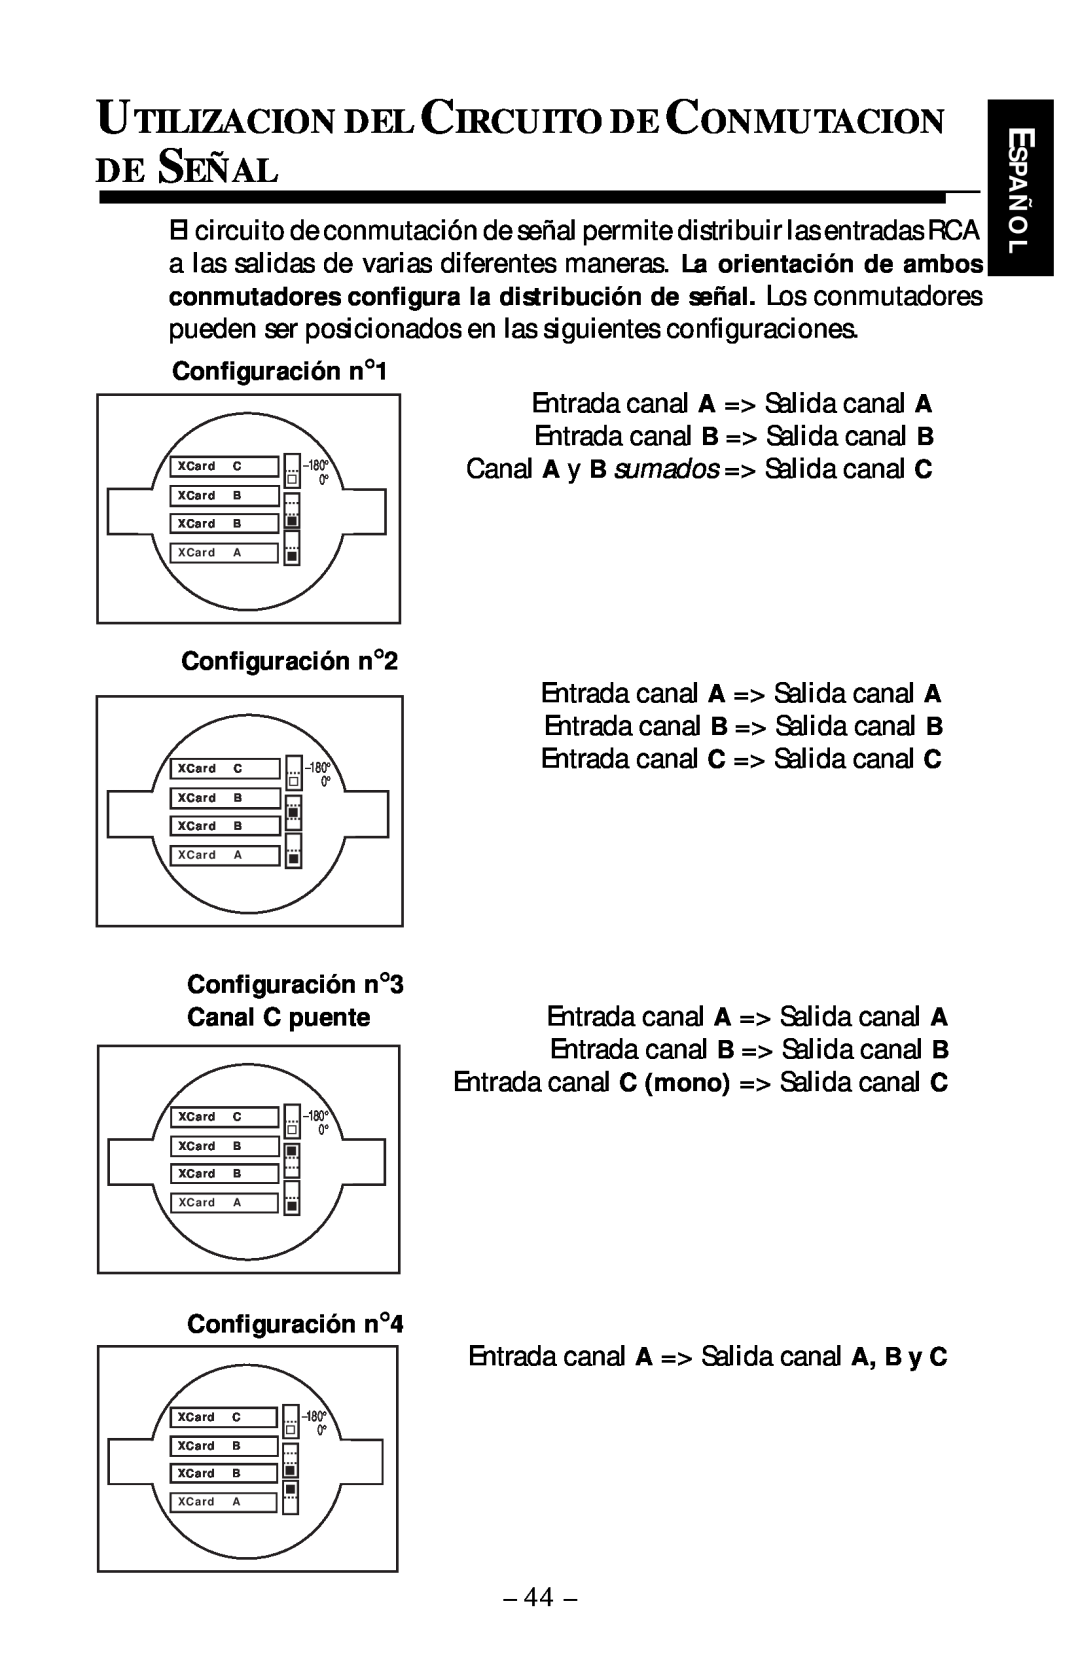 Rockford Fosgate 360.6 manual Utilizacion Del Circuito De Conmutacion De Señal, Configuración n1, Español, Configuración n2 